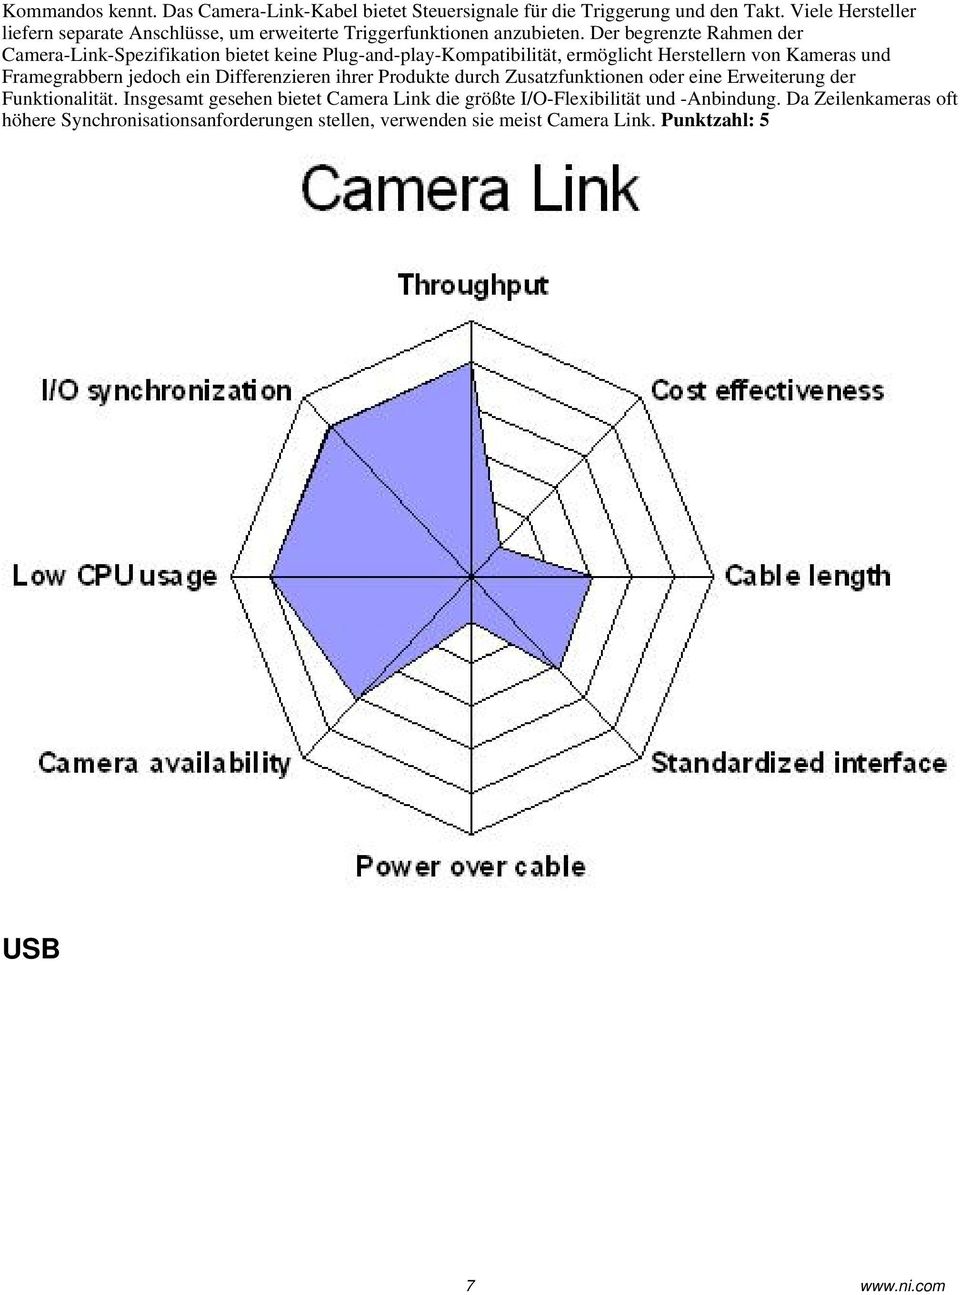 Der begrenzte Rahmen der Camera-Link-Spezifikation bietet keine Plug-and-play-Kompatibilität, ermöglicht Herstellern von Kameras und Framegrabbern jedoch ein